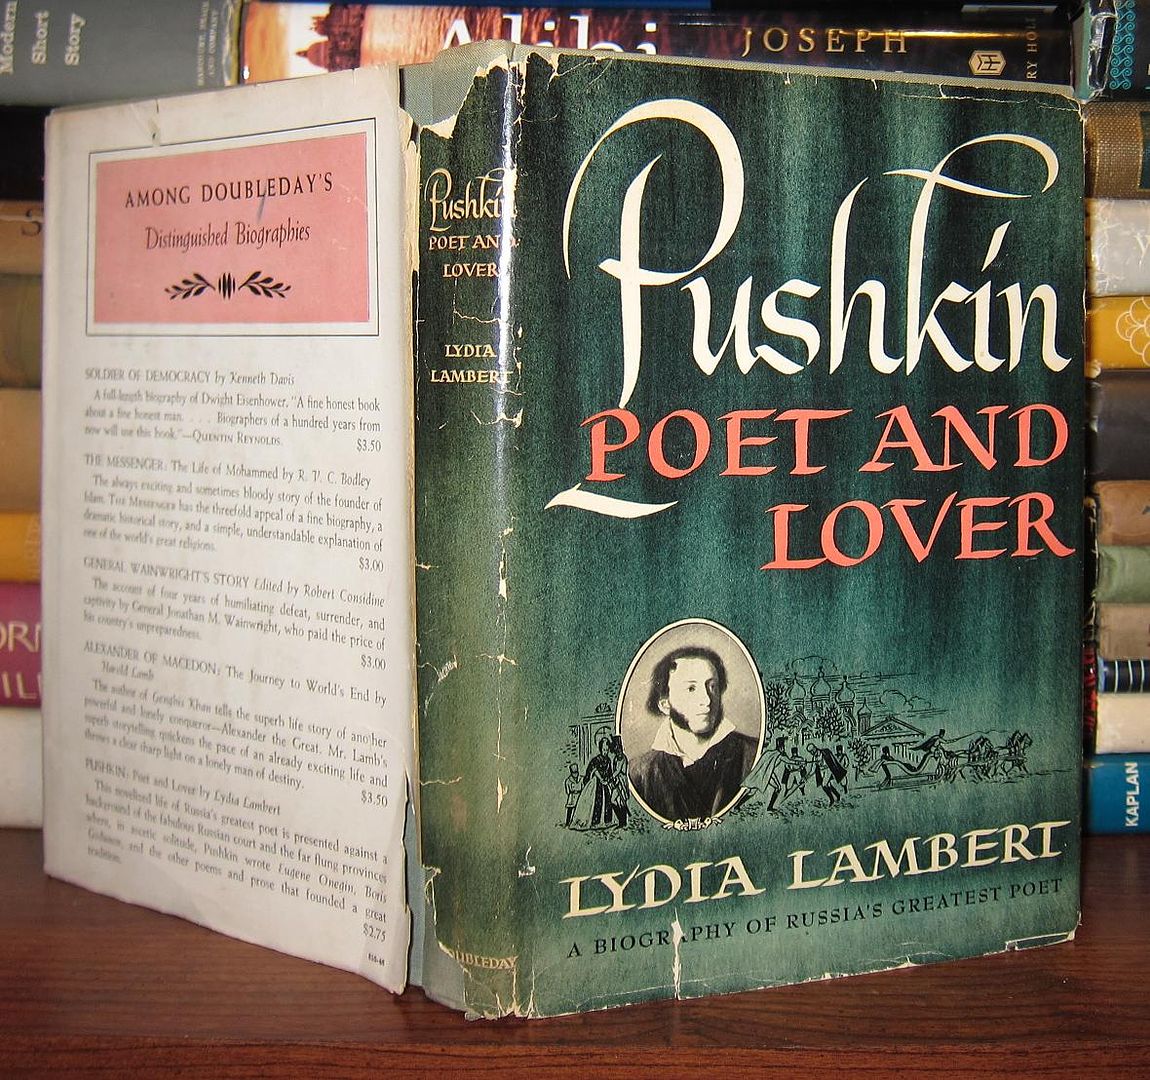 LAMBERT, LYDIA - Pushkin Poet and Lover